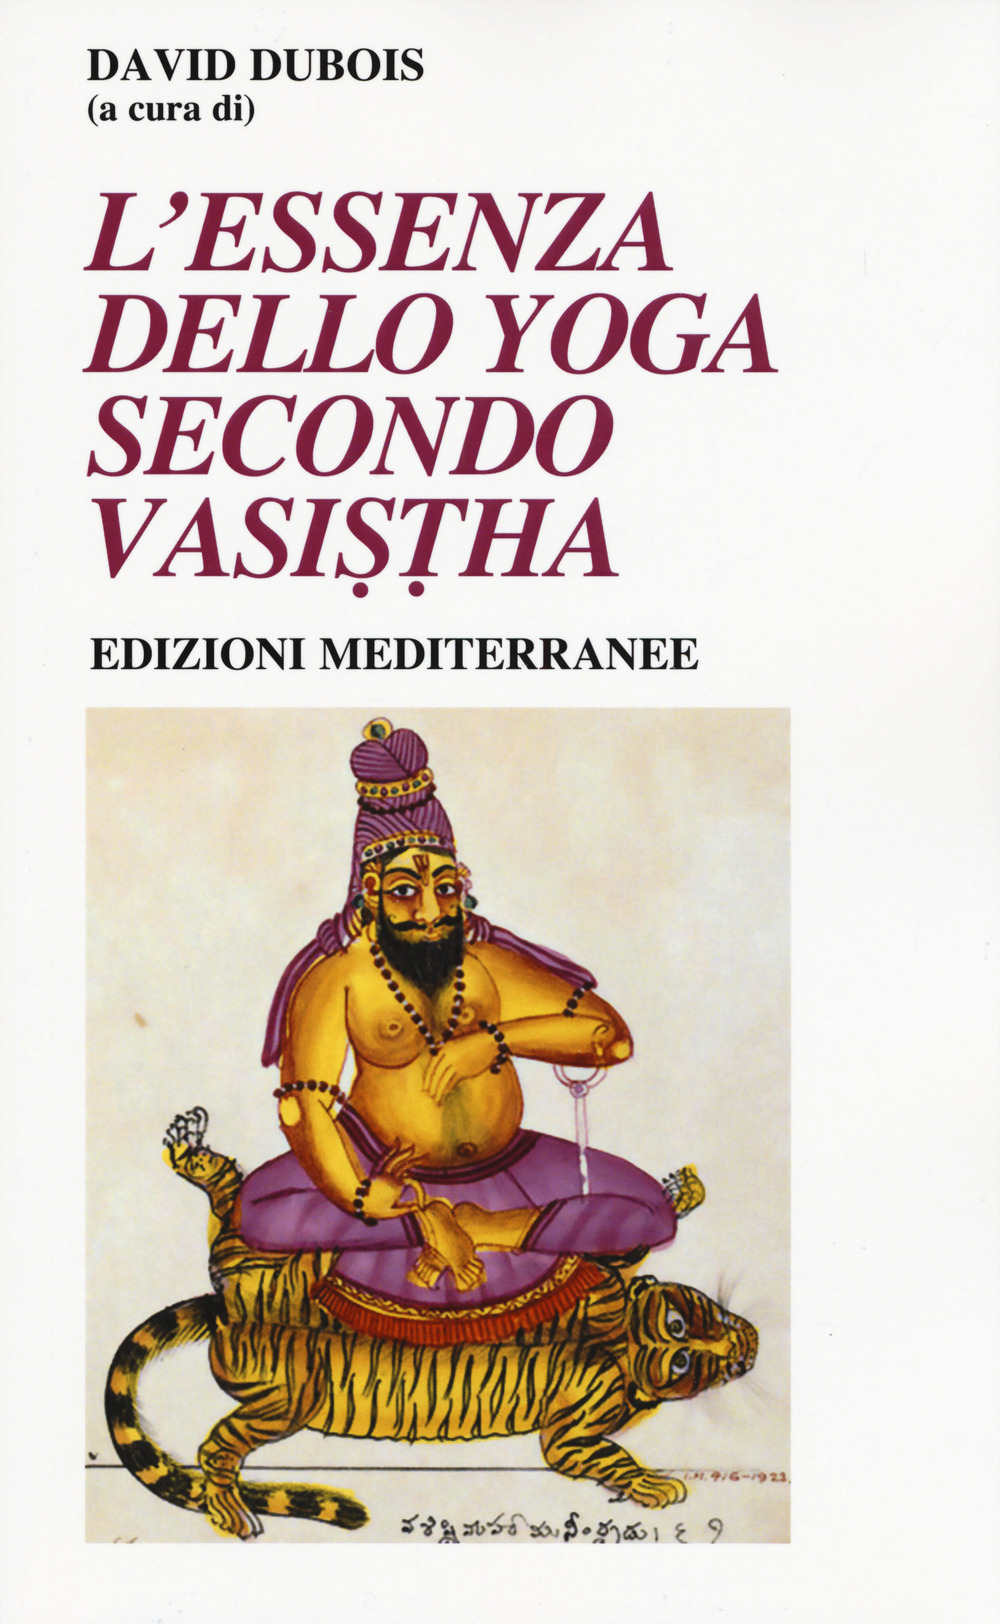 L'essenza dello yoga secondo Vasistha